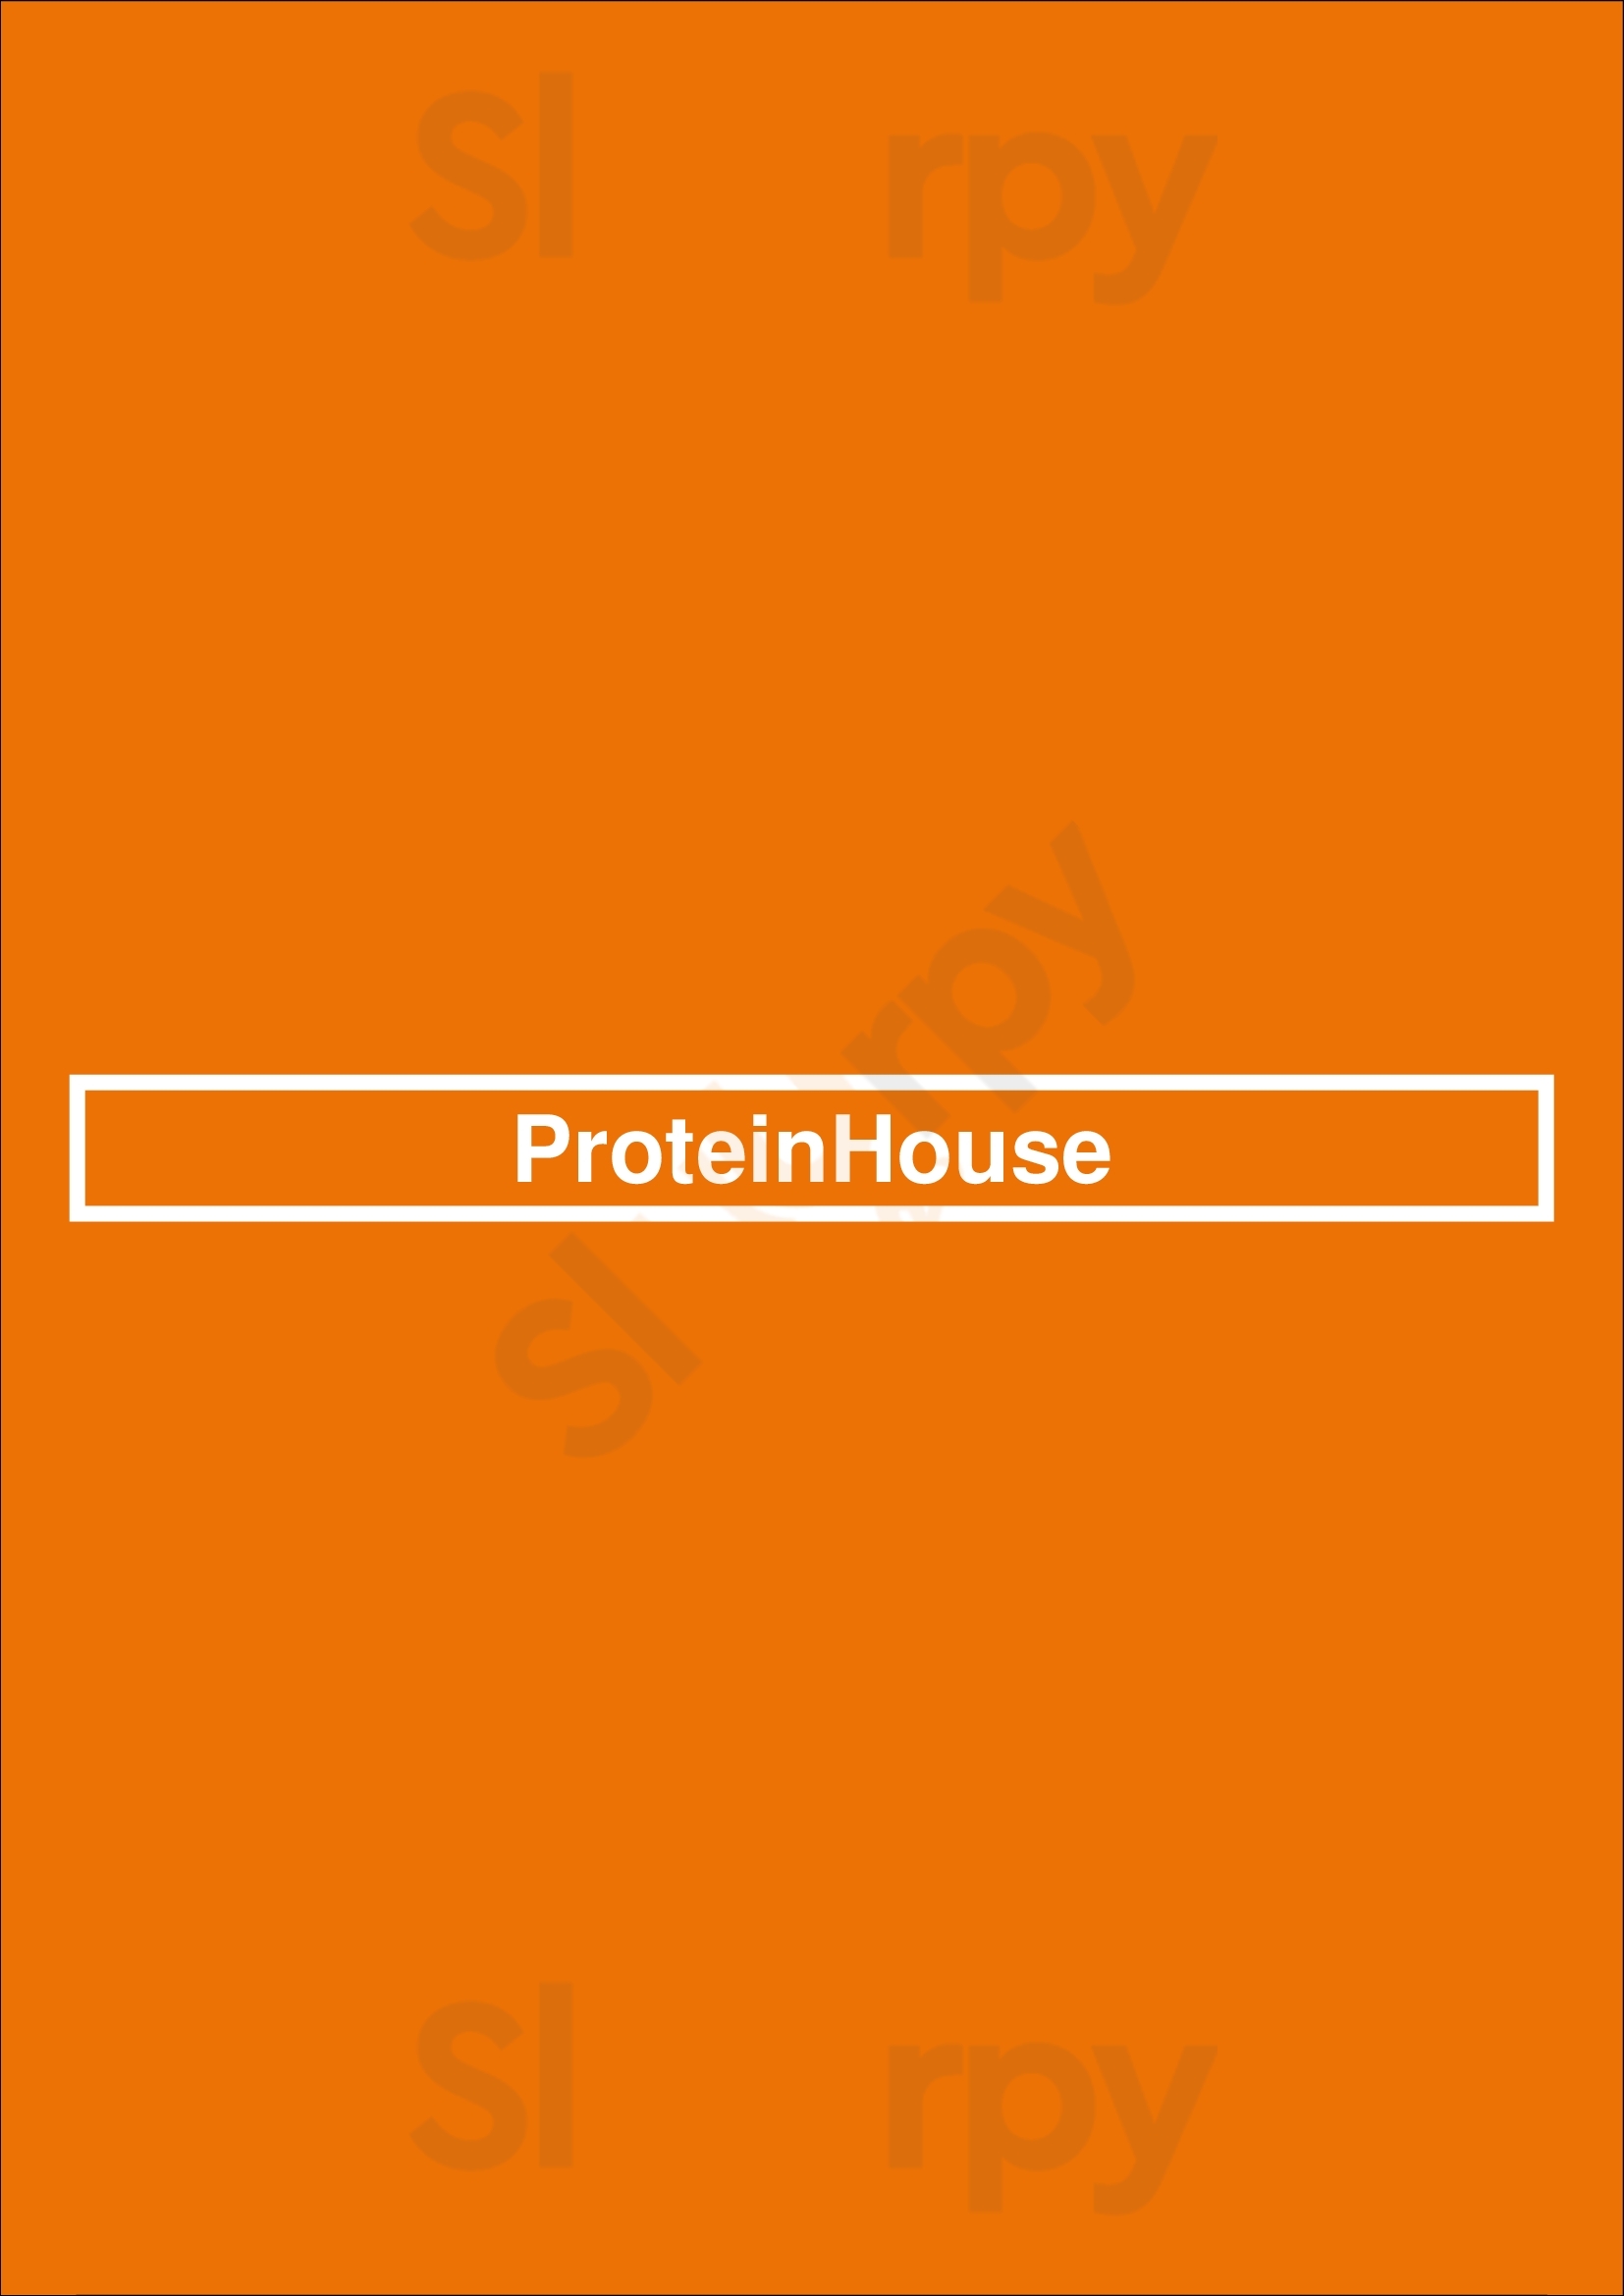 Proteinhouse Phoenix Menu - 1